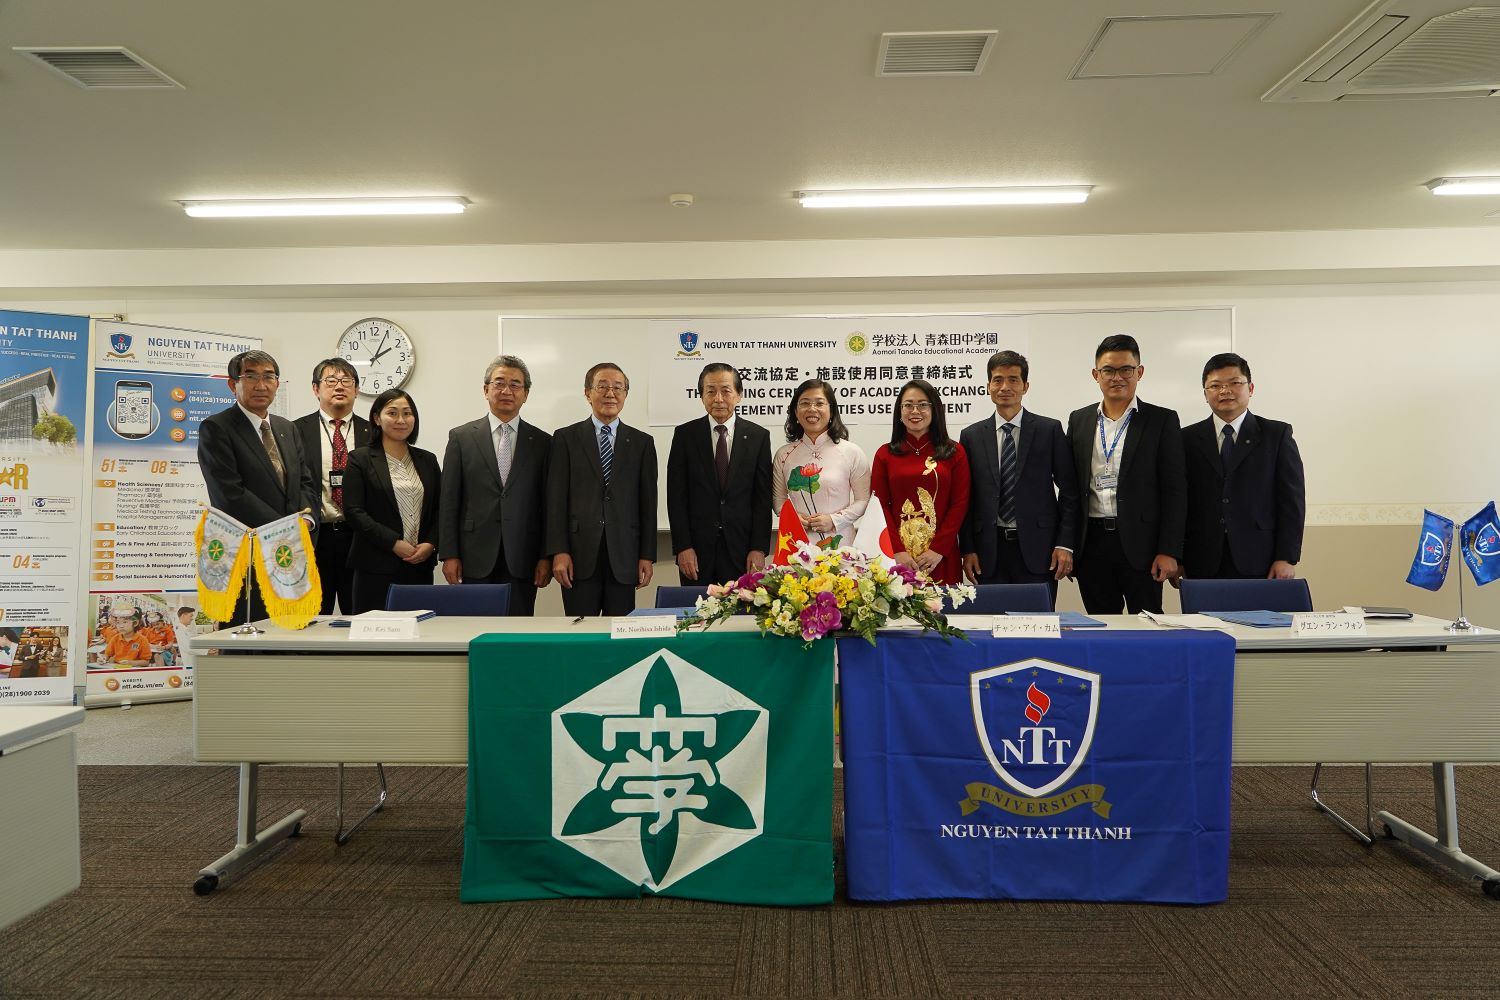 Trường ĐH Nguyễn Tất Thành đặt phân hiệu vệ tinh tại Trường ĐH Aomori Chuo Gakuin, Nhật Bản - Ảnh 1.